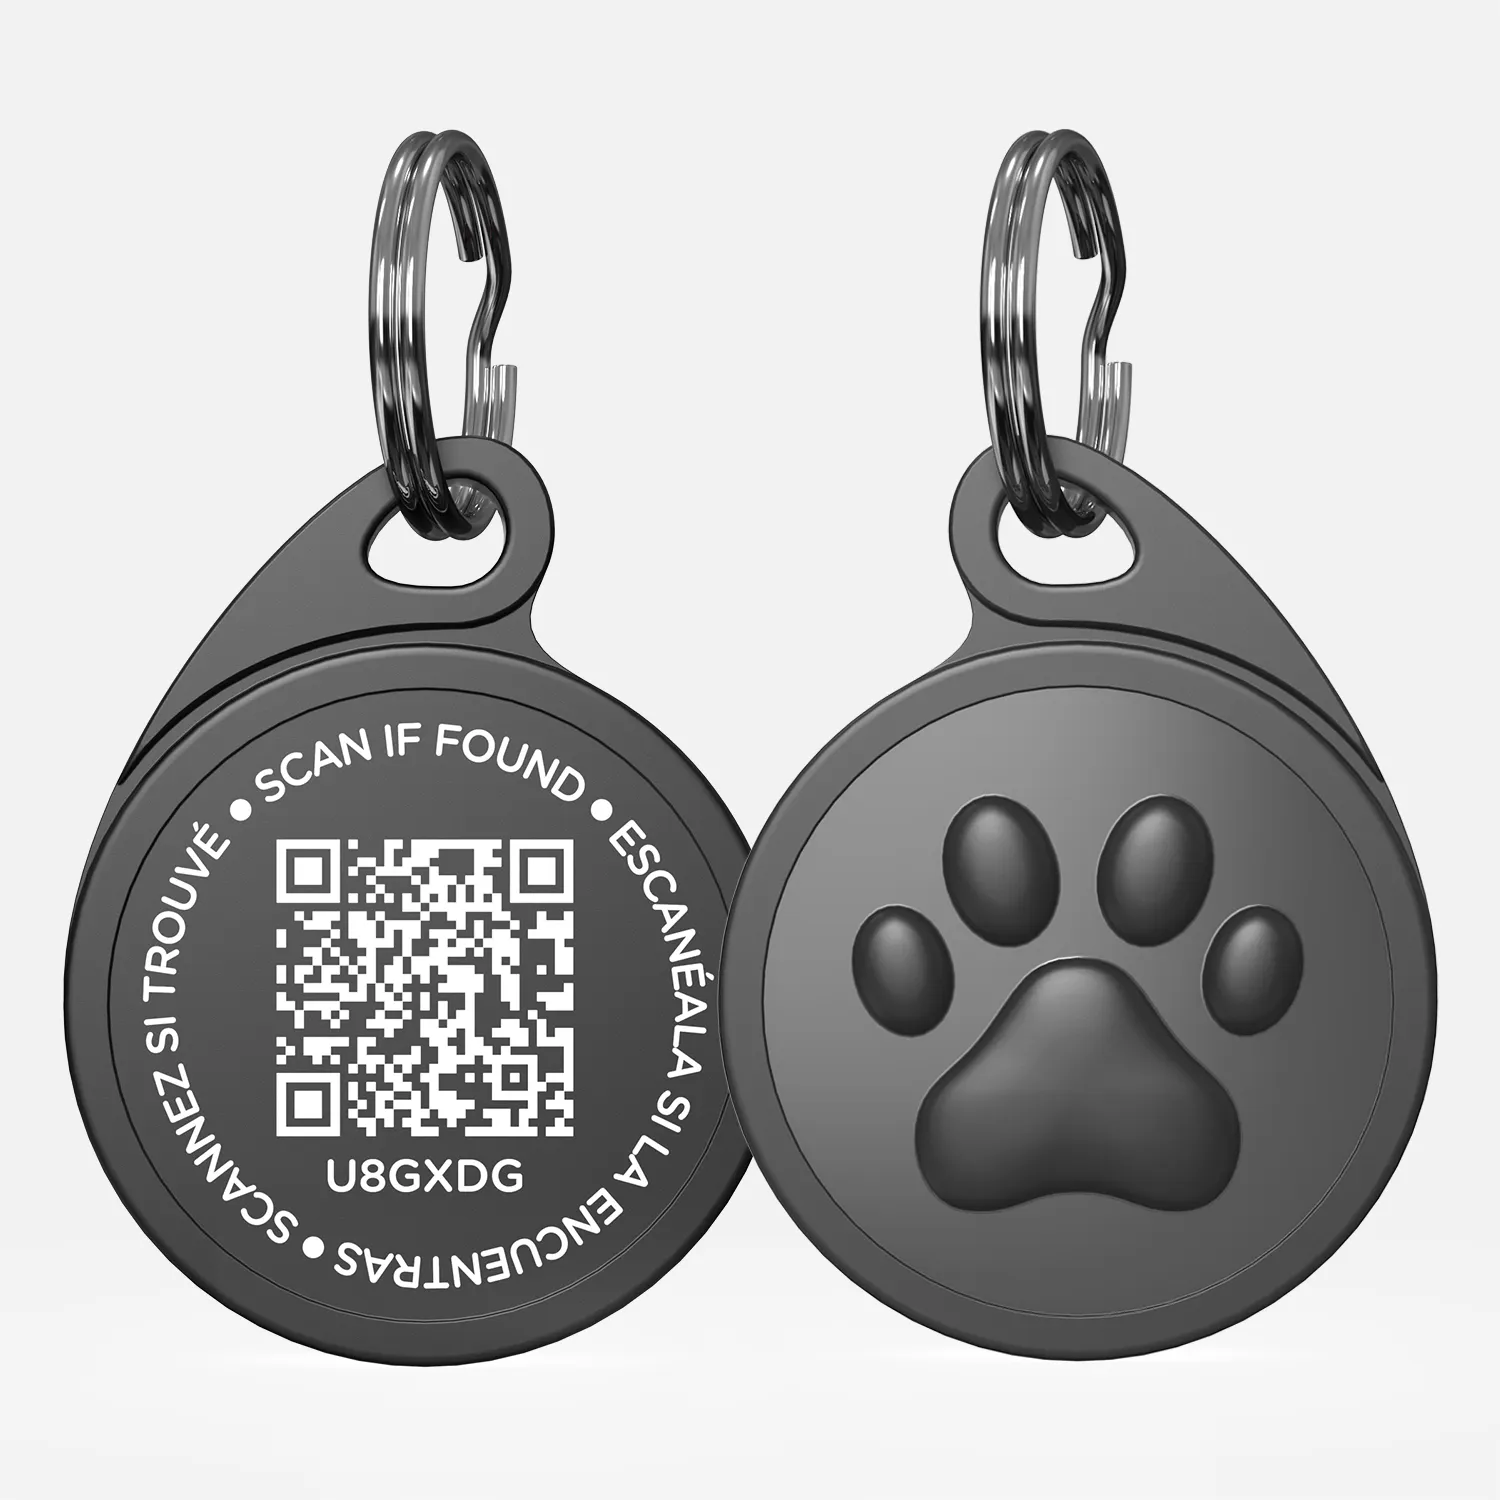 مخصص رخيصة دائم رمز الاستجابة السريعة الكلب حيوان أليف بطاقة الهوية